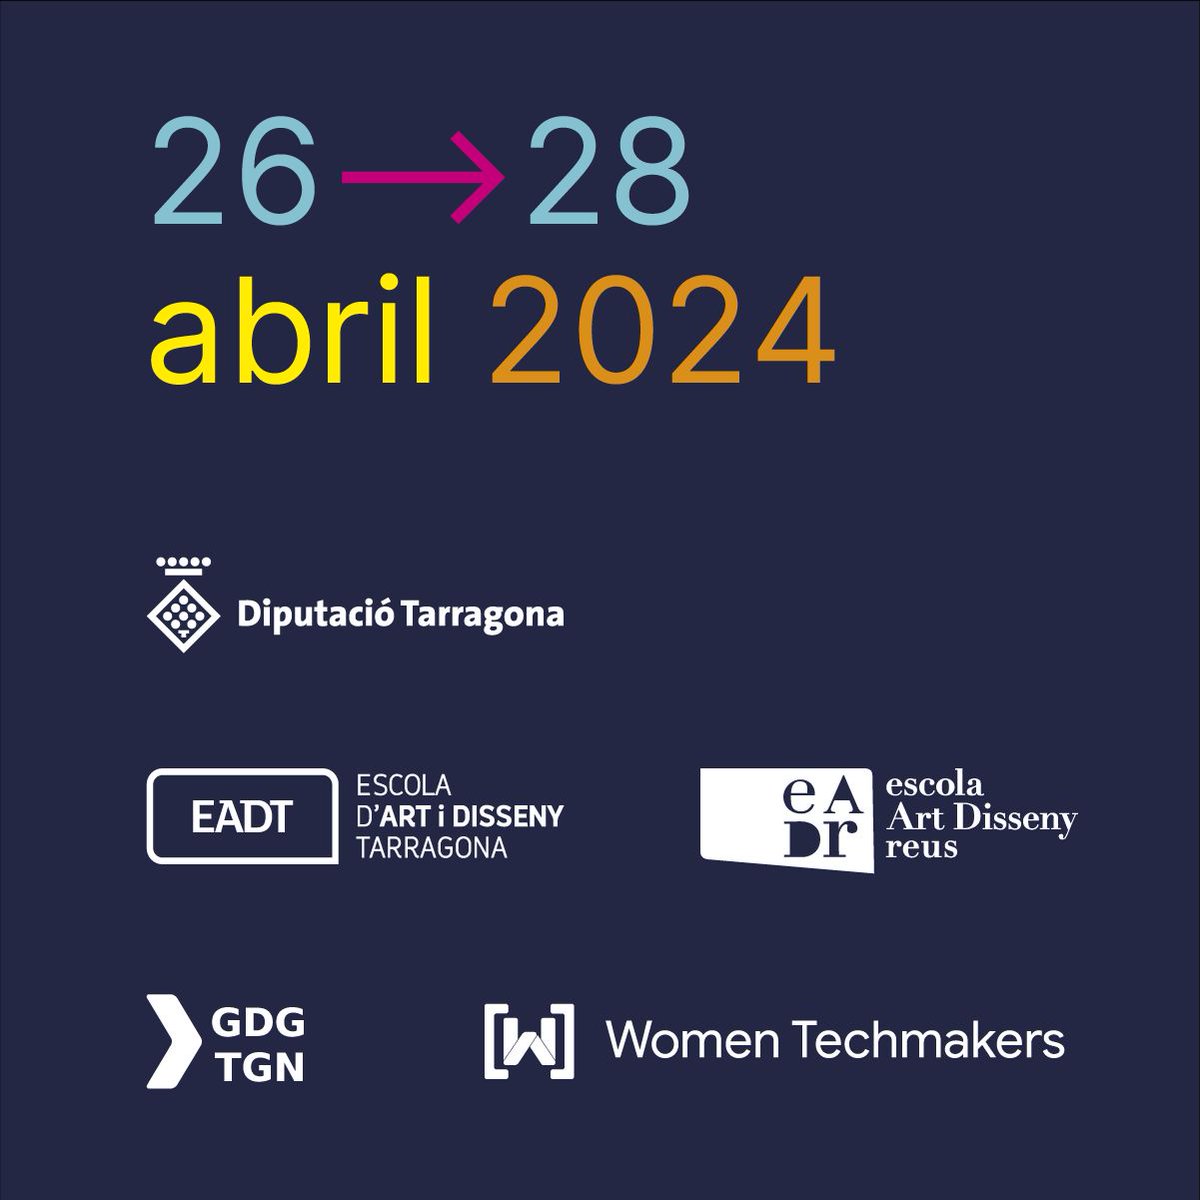 👉🏻Arriba la 4a Game Jam Women Techmakers a l'#EADTarragona🥳 Avui, dissabte i diumenge tindrà lloc a l’EADTarragona un concurs de creació i desenvolupament de videojocs obert a tothom +info: gamejamwtm.gdgtarragona.com  #somEADT #GameJamWT #Tarragona